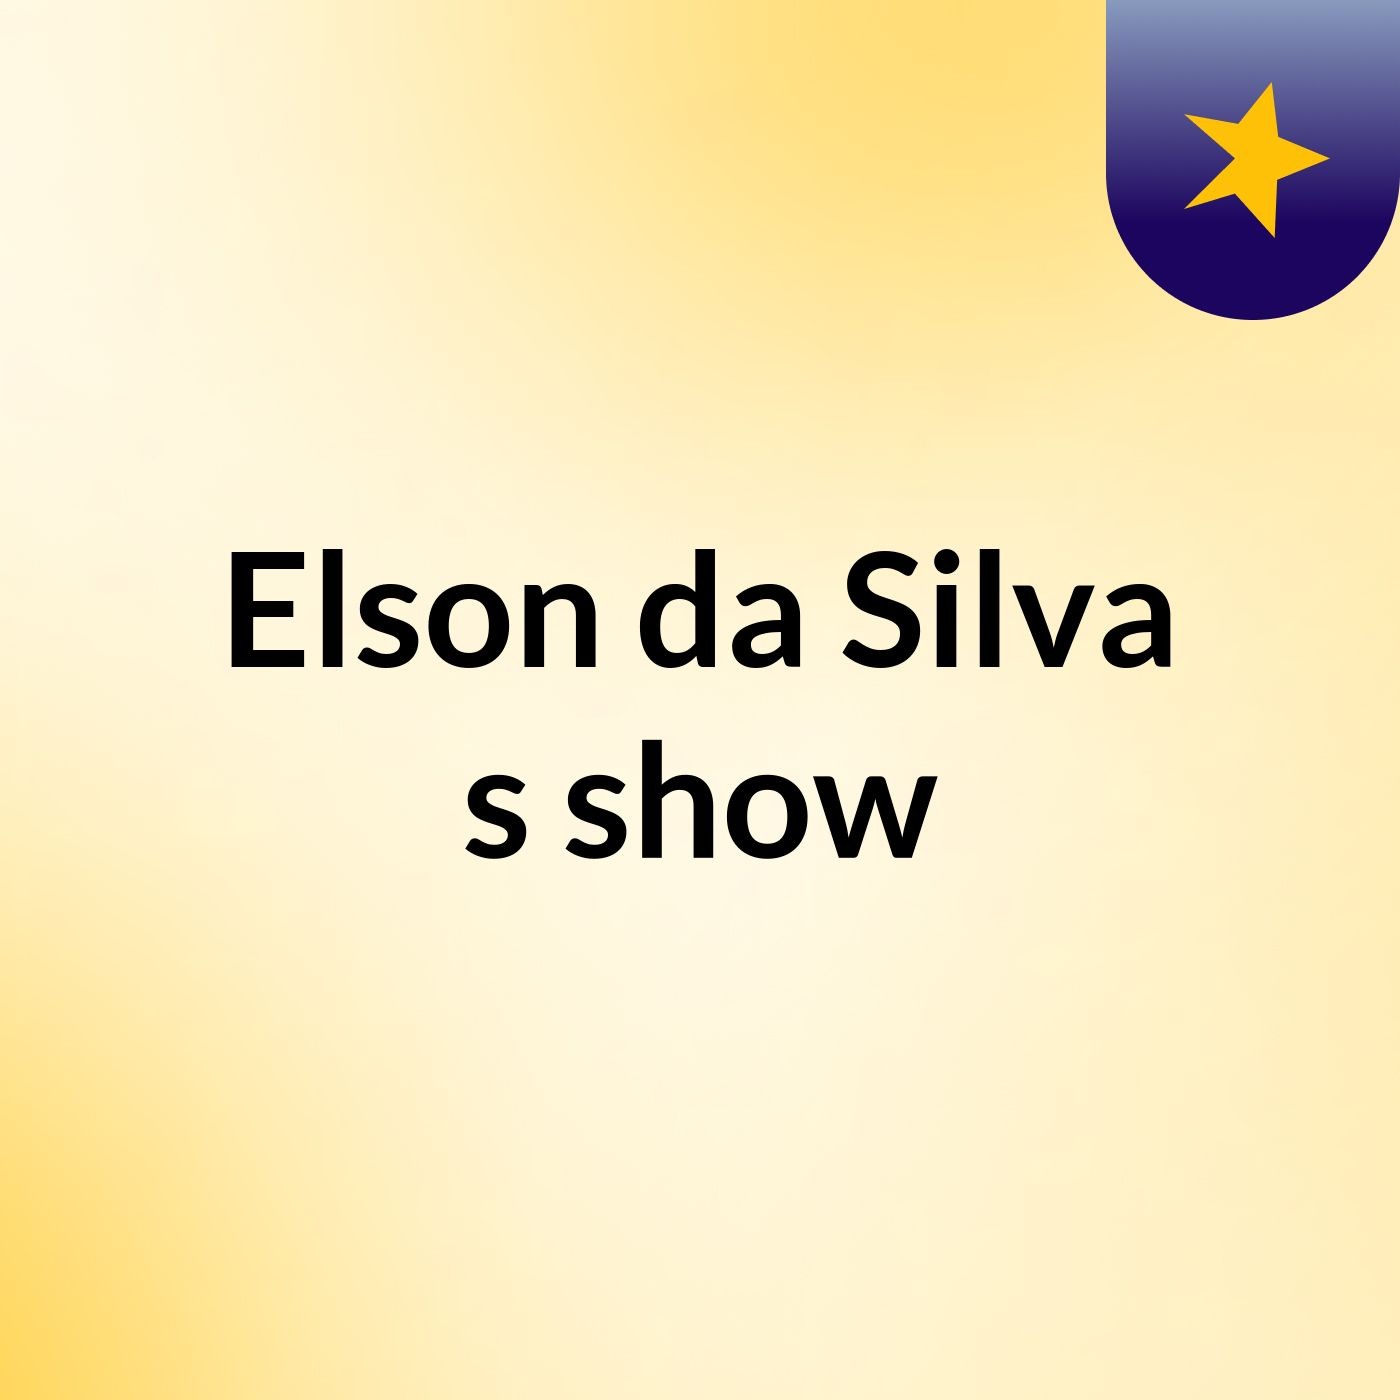 Elson da Silva's show